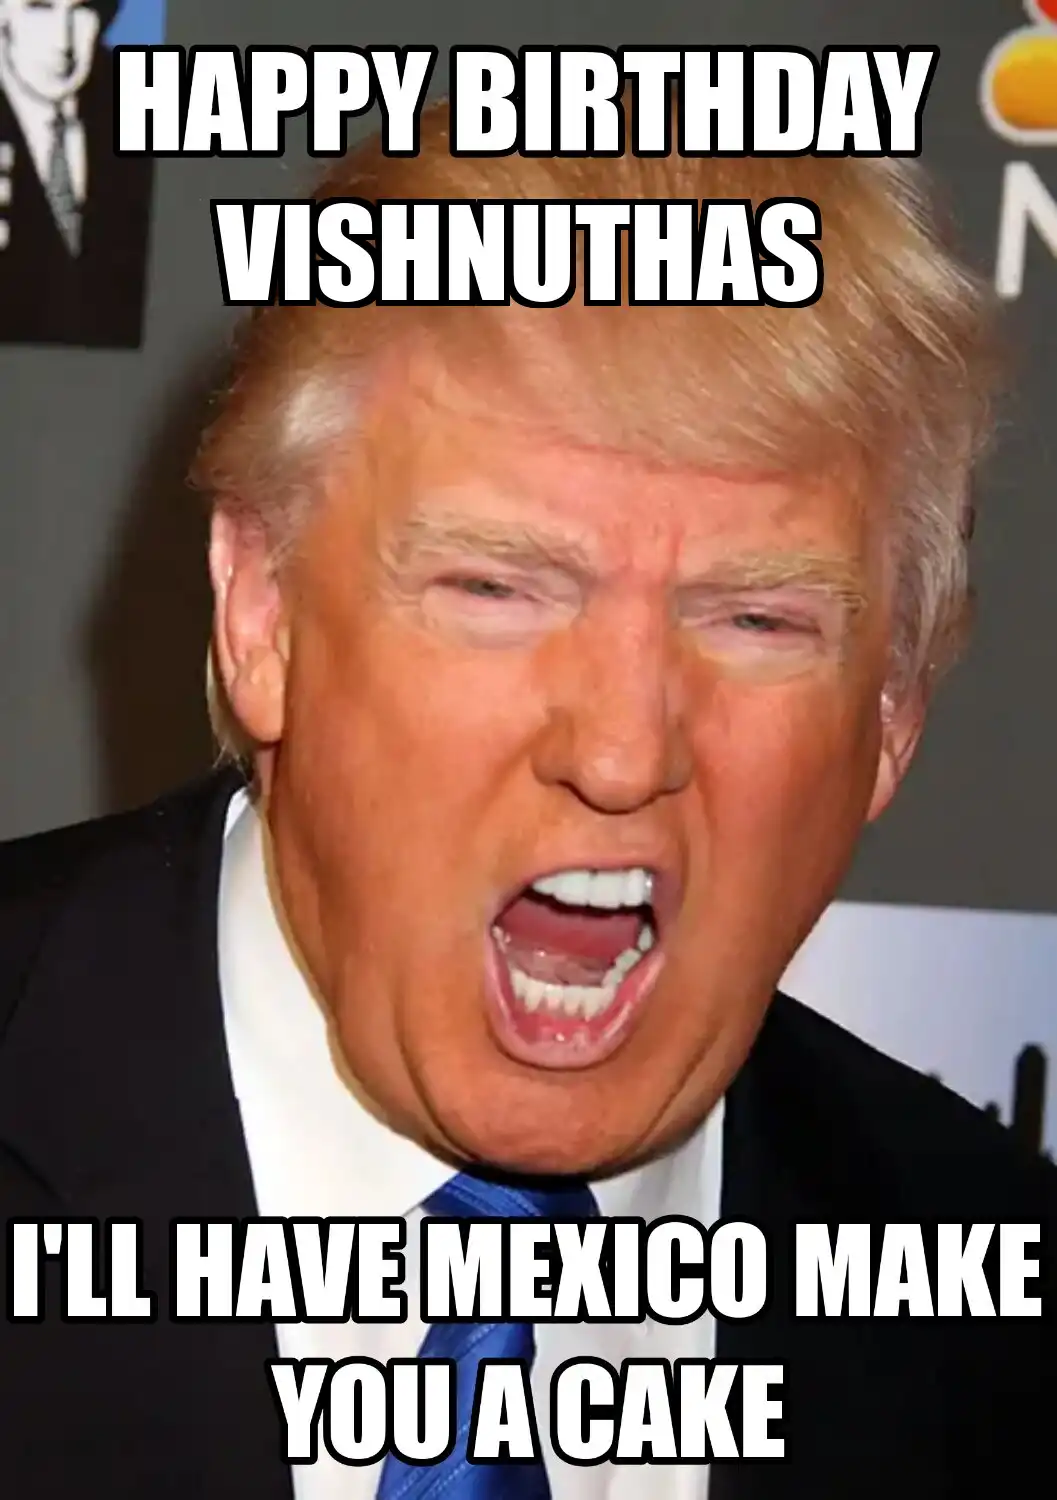 Happy Birthday Vishnuthas Mexico Make You A Cake Meme